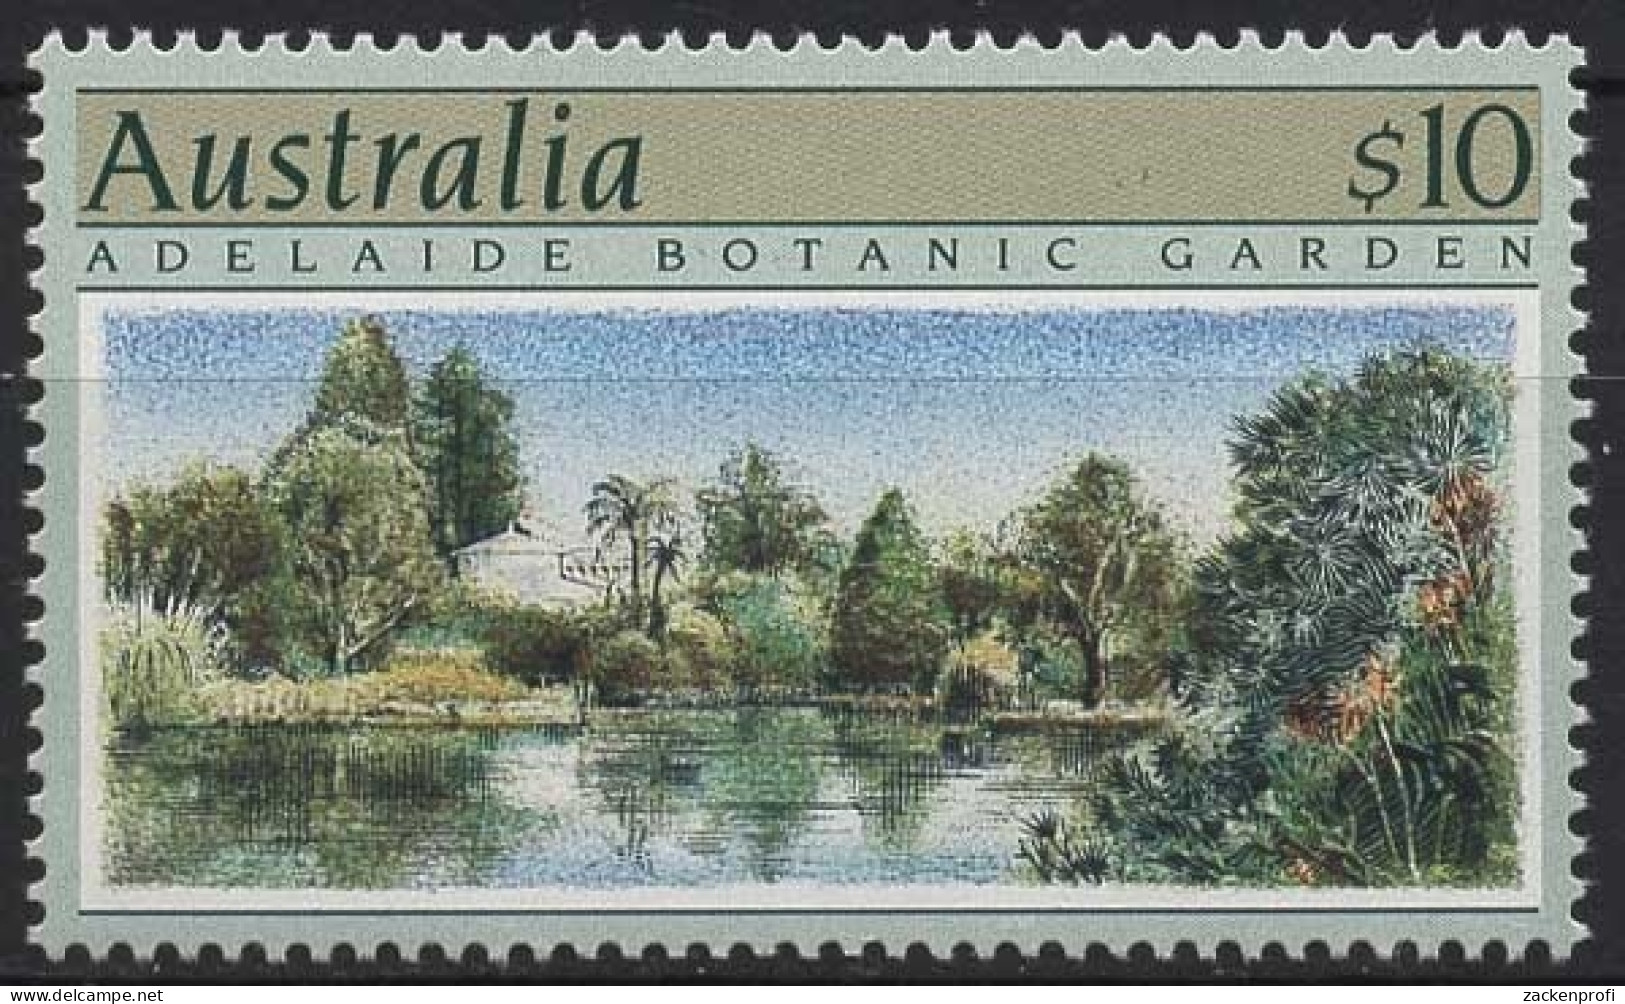 Australien 1989 Gartenanlagen 1150 Postfrisch - Ongebruikt